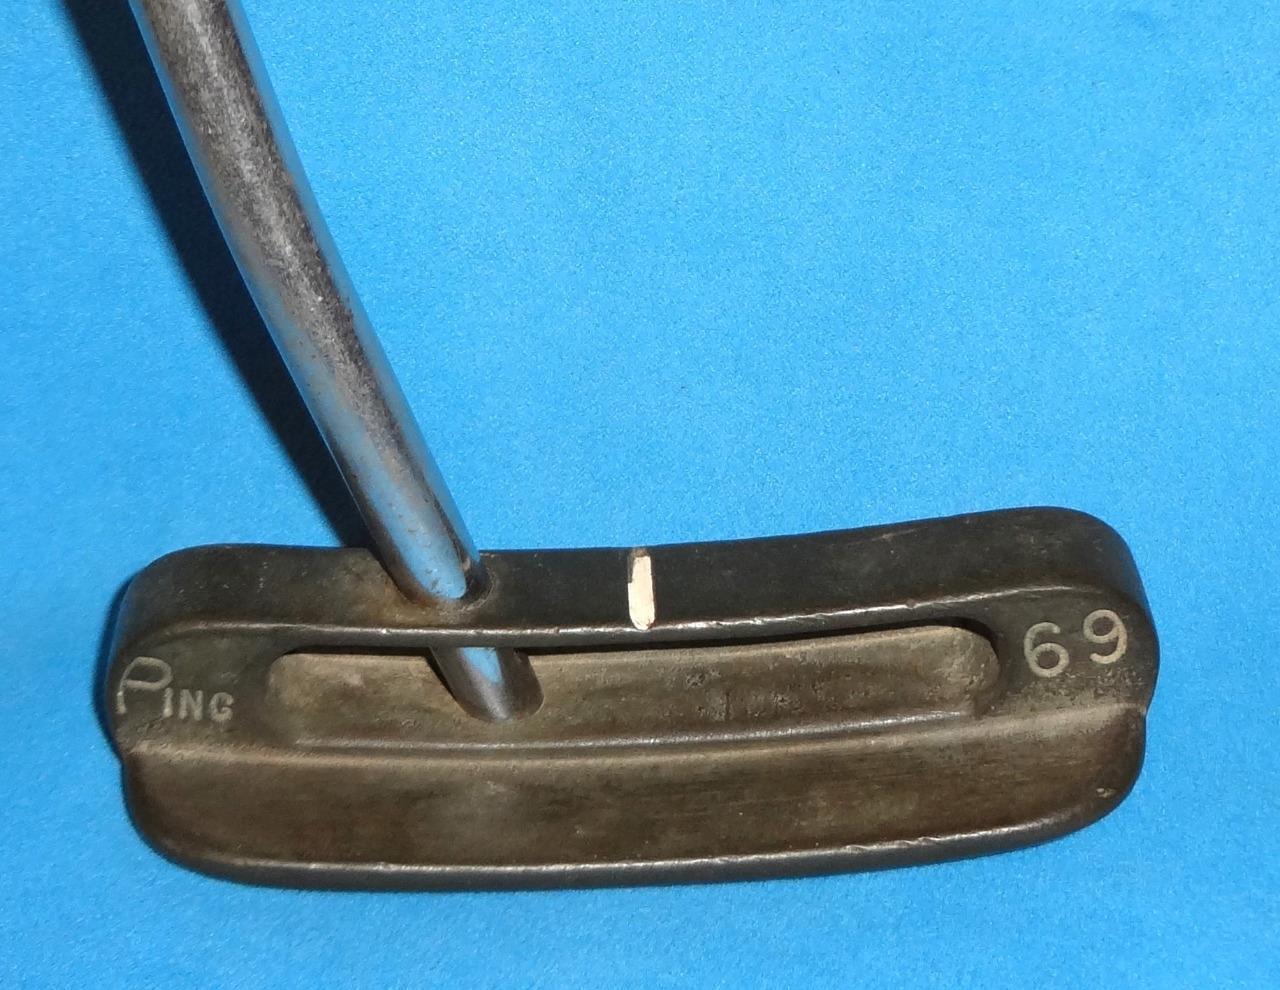 Ping SCOTTSDALE 69 - By Karsten - Putter  - Rare Early model * Informer grip *